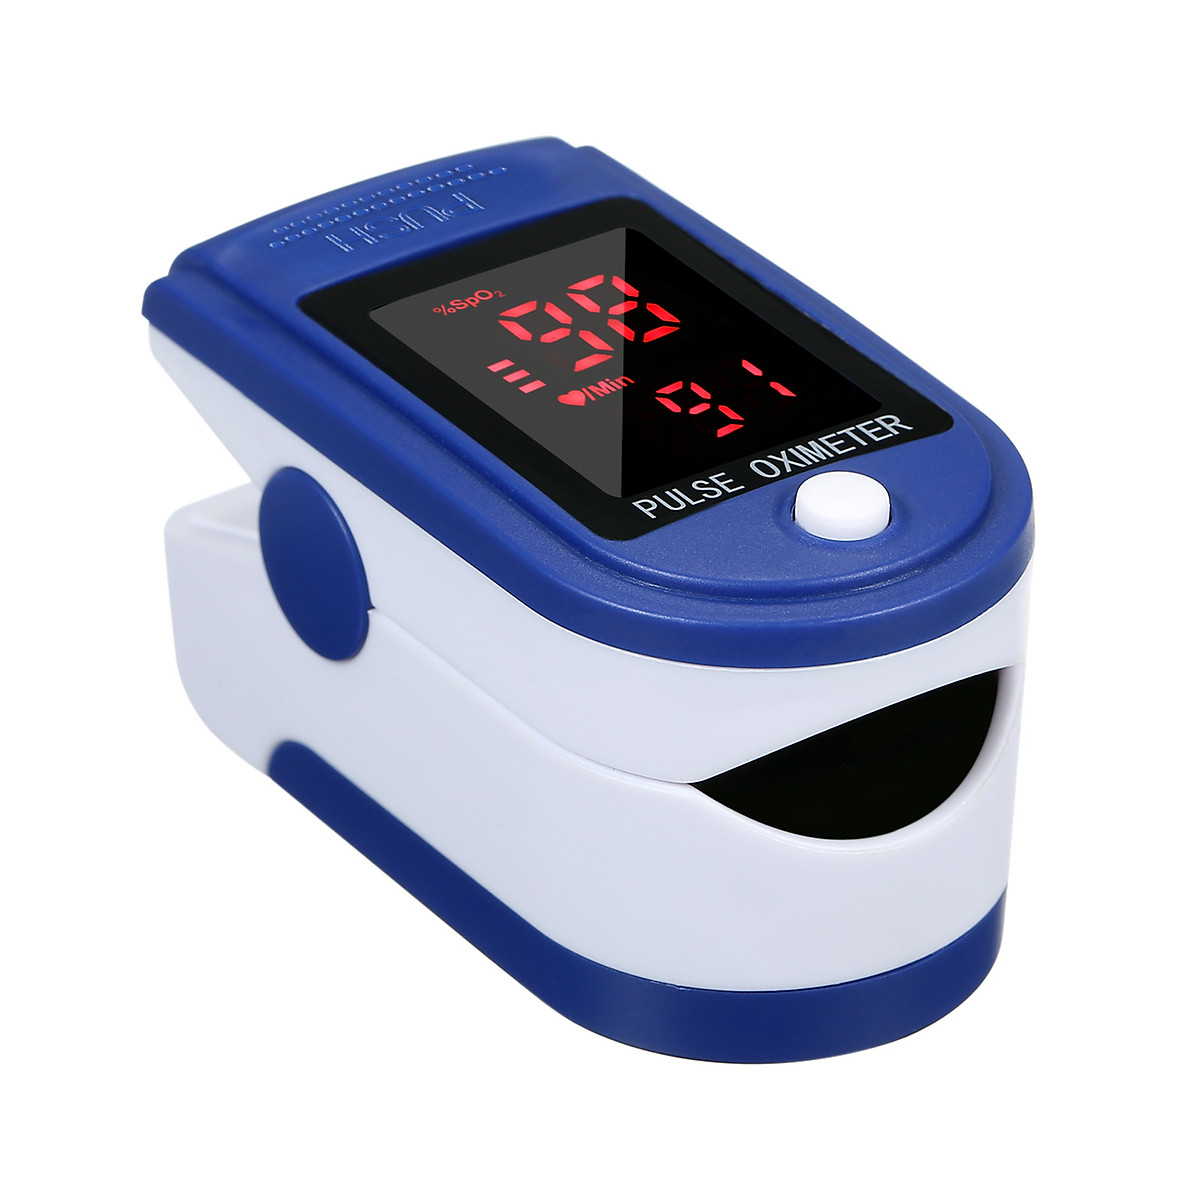 Máy đo nồng độ oxy, SpO2, nhịp tim, độ bão hòa bằng xung đầu ngón tay với màn hình LED Fingertip Clip Pulse Oximeter L-ED Display Mini SpO2 Monitor Oxygen